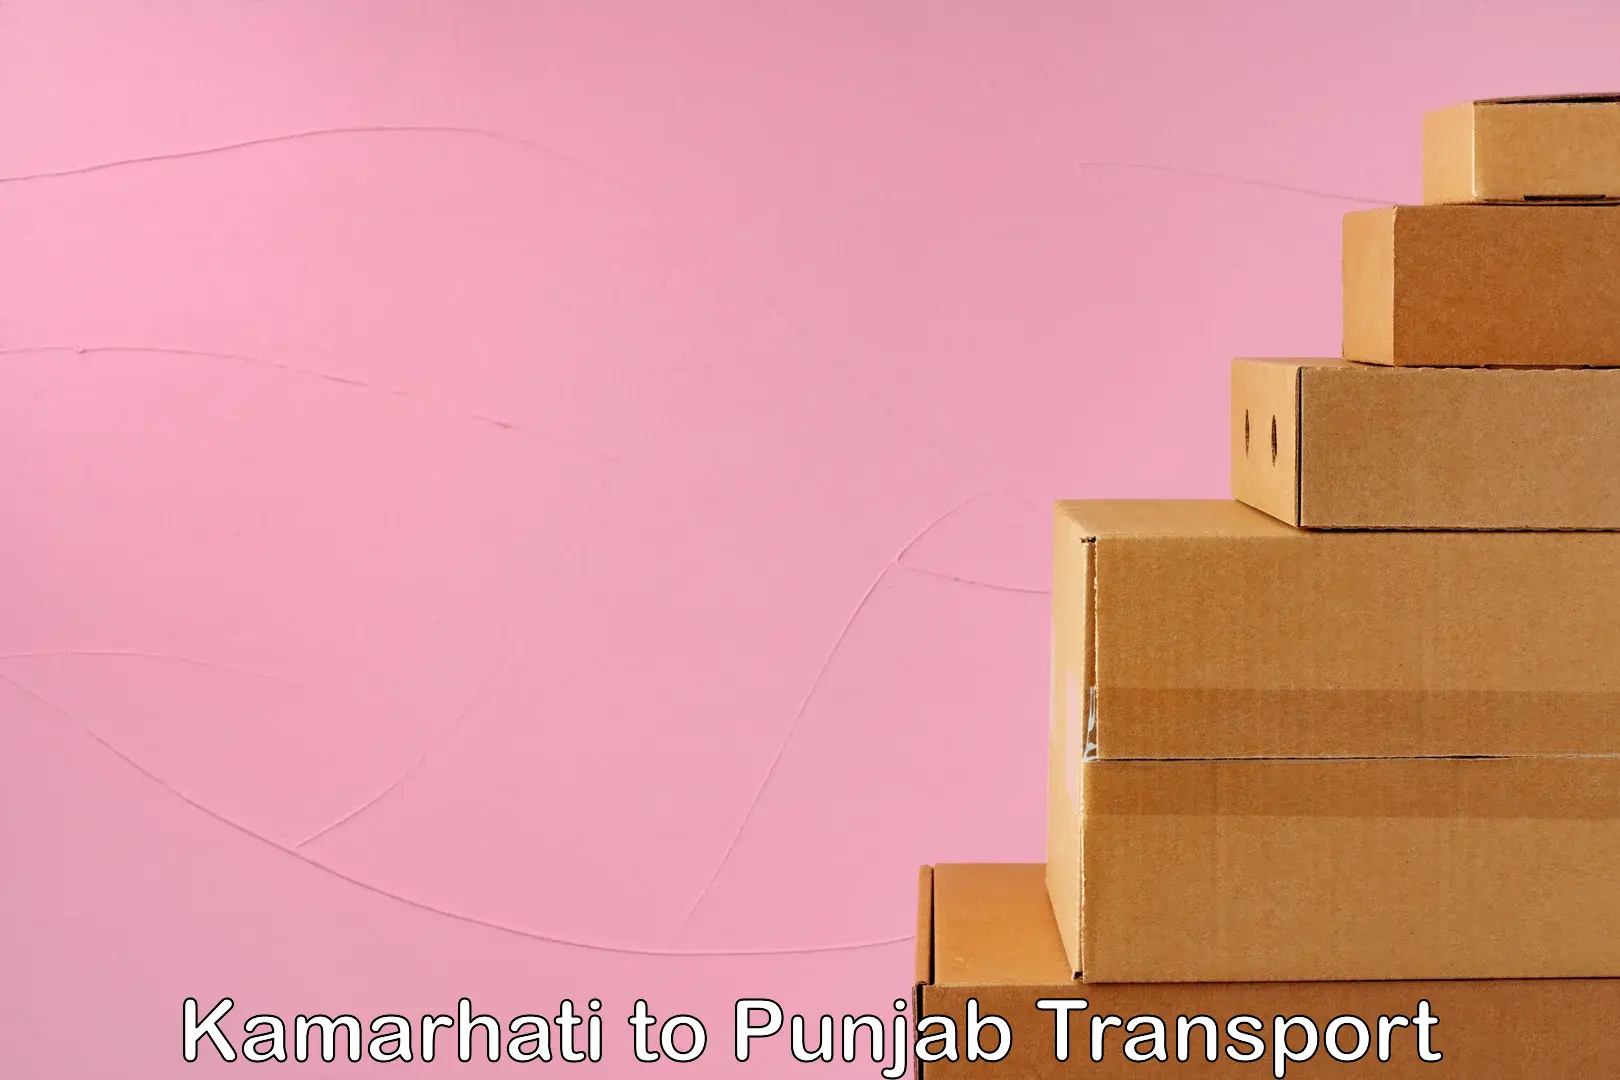 Vehicle transport services Kamarhati to Punjab